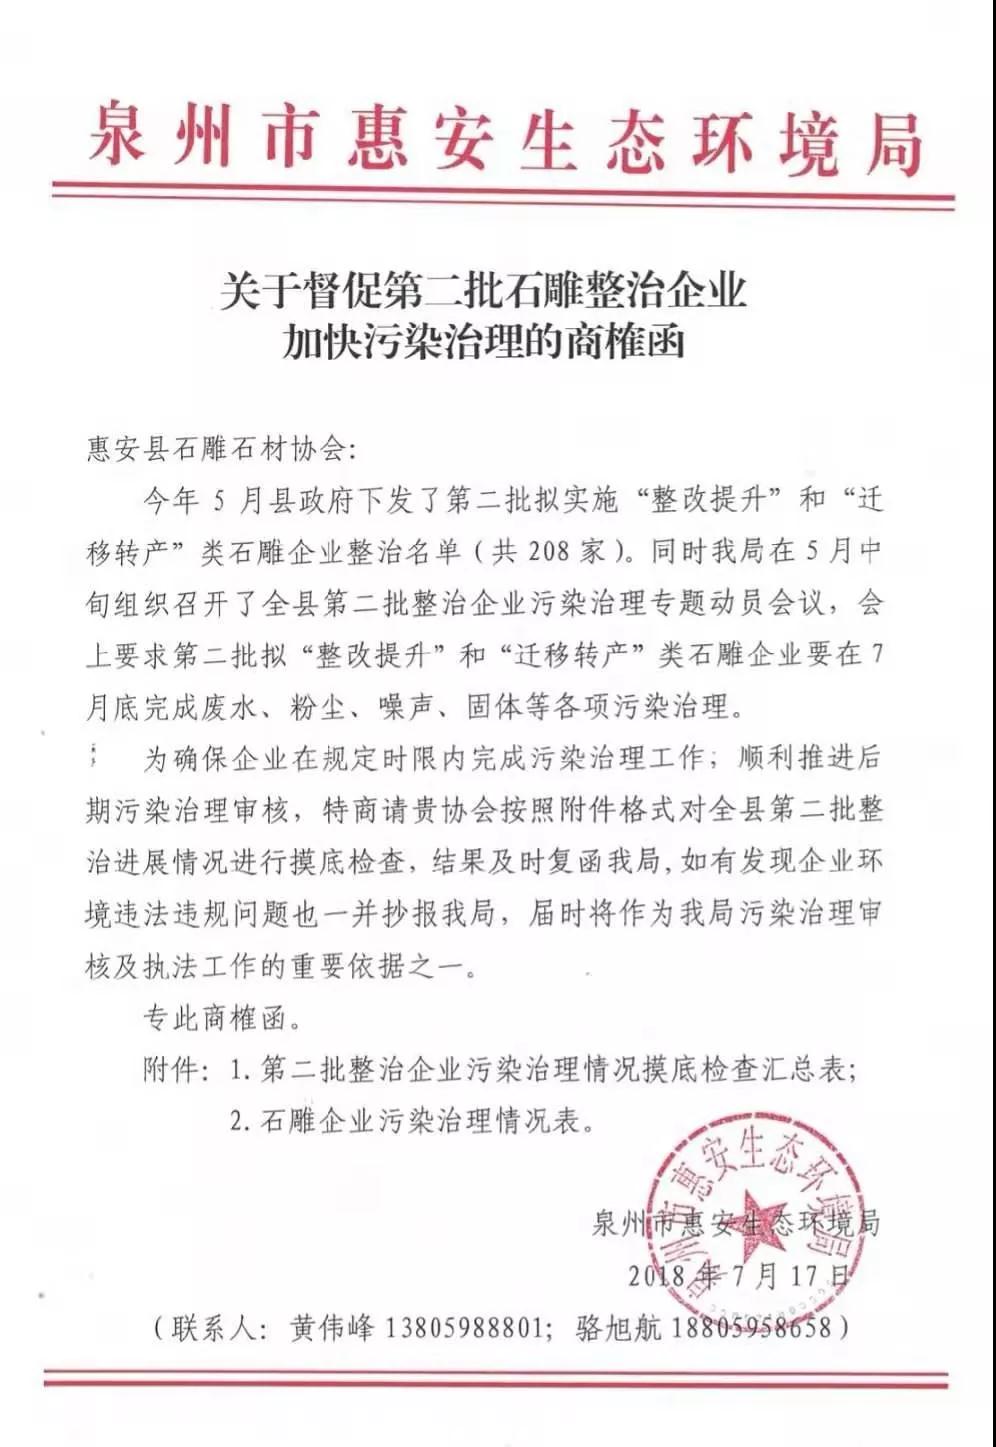 中国石雕之乡惠安发布第二批石雕企业整治通知，7月底必须完成